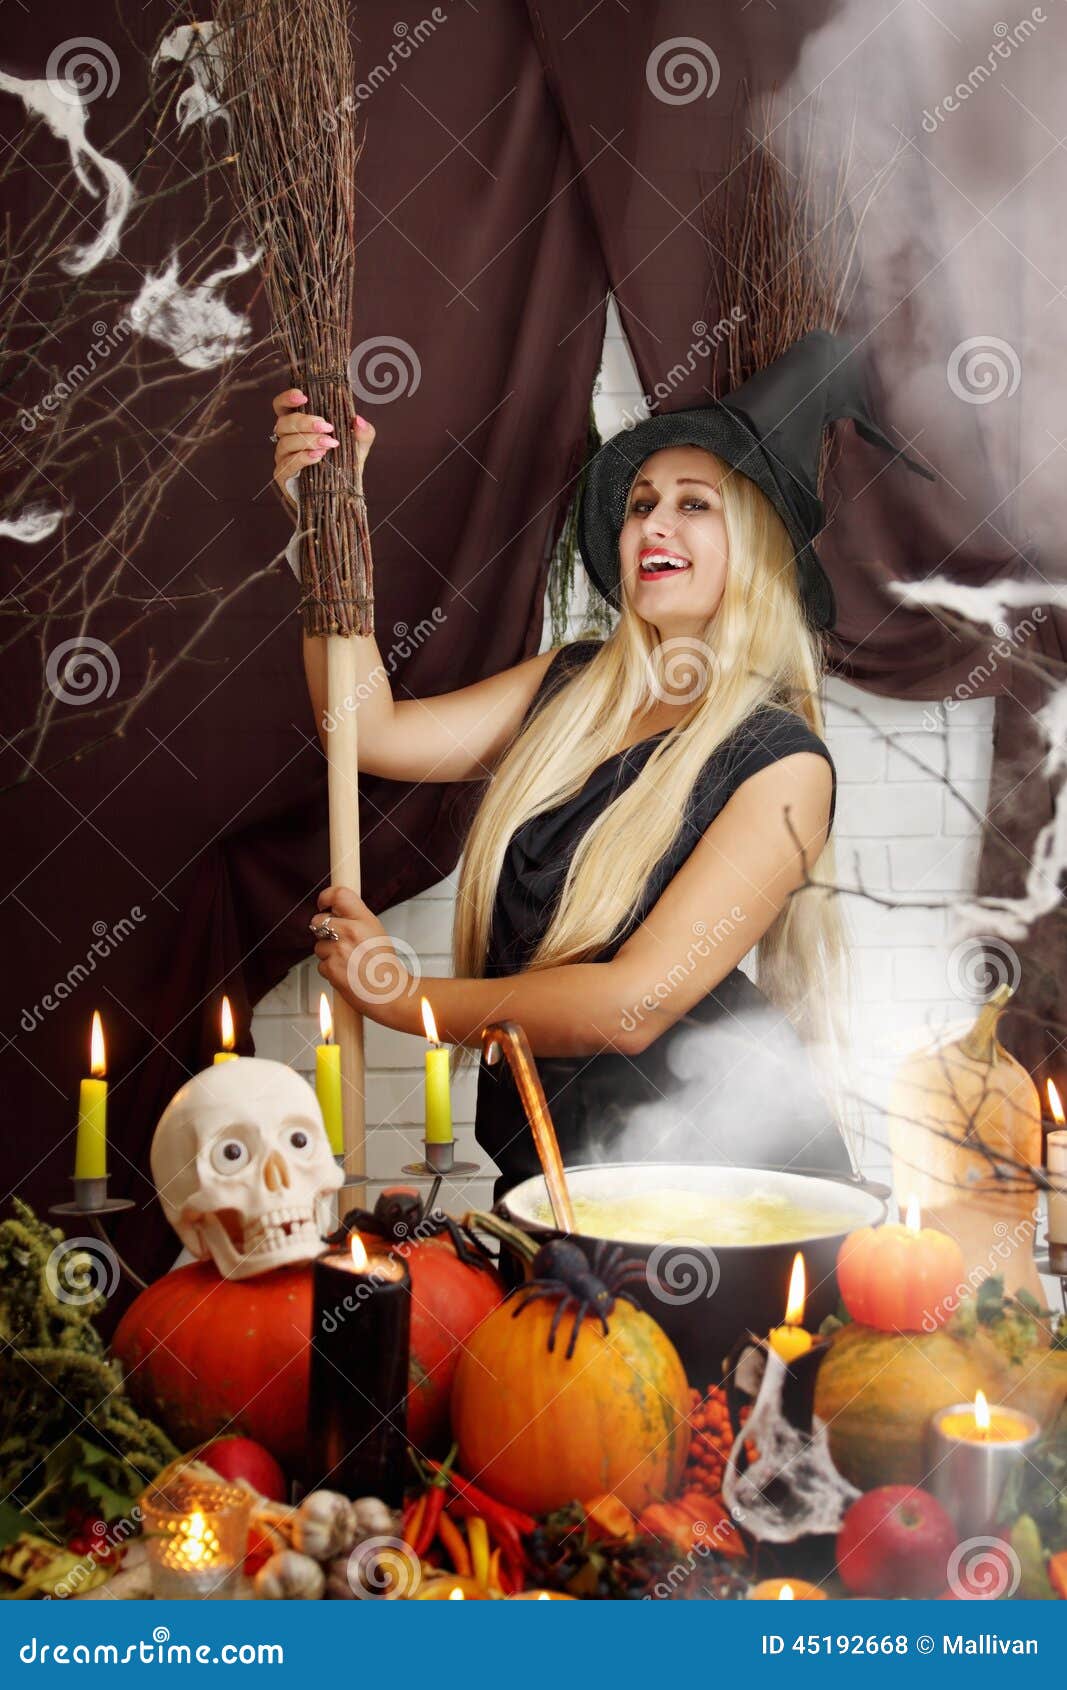 A Menina sexy Na Bruxa De Halloween Voa Na Vassoura Imagem de Stock -  Imagem de vôo, atrativo: 26274615